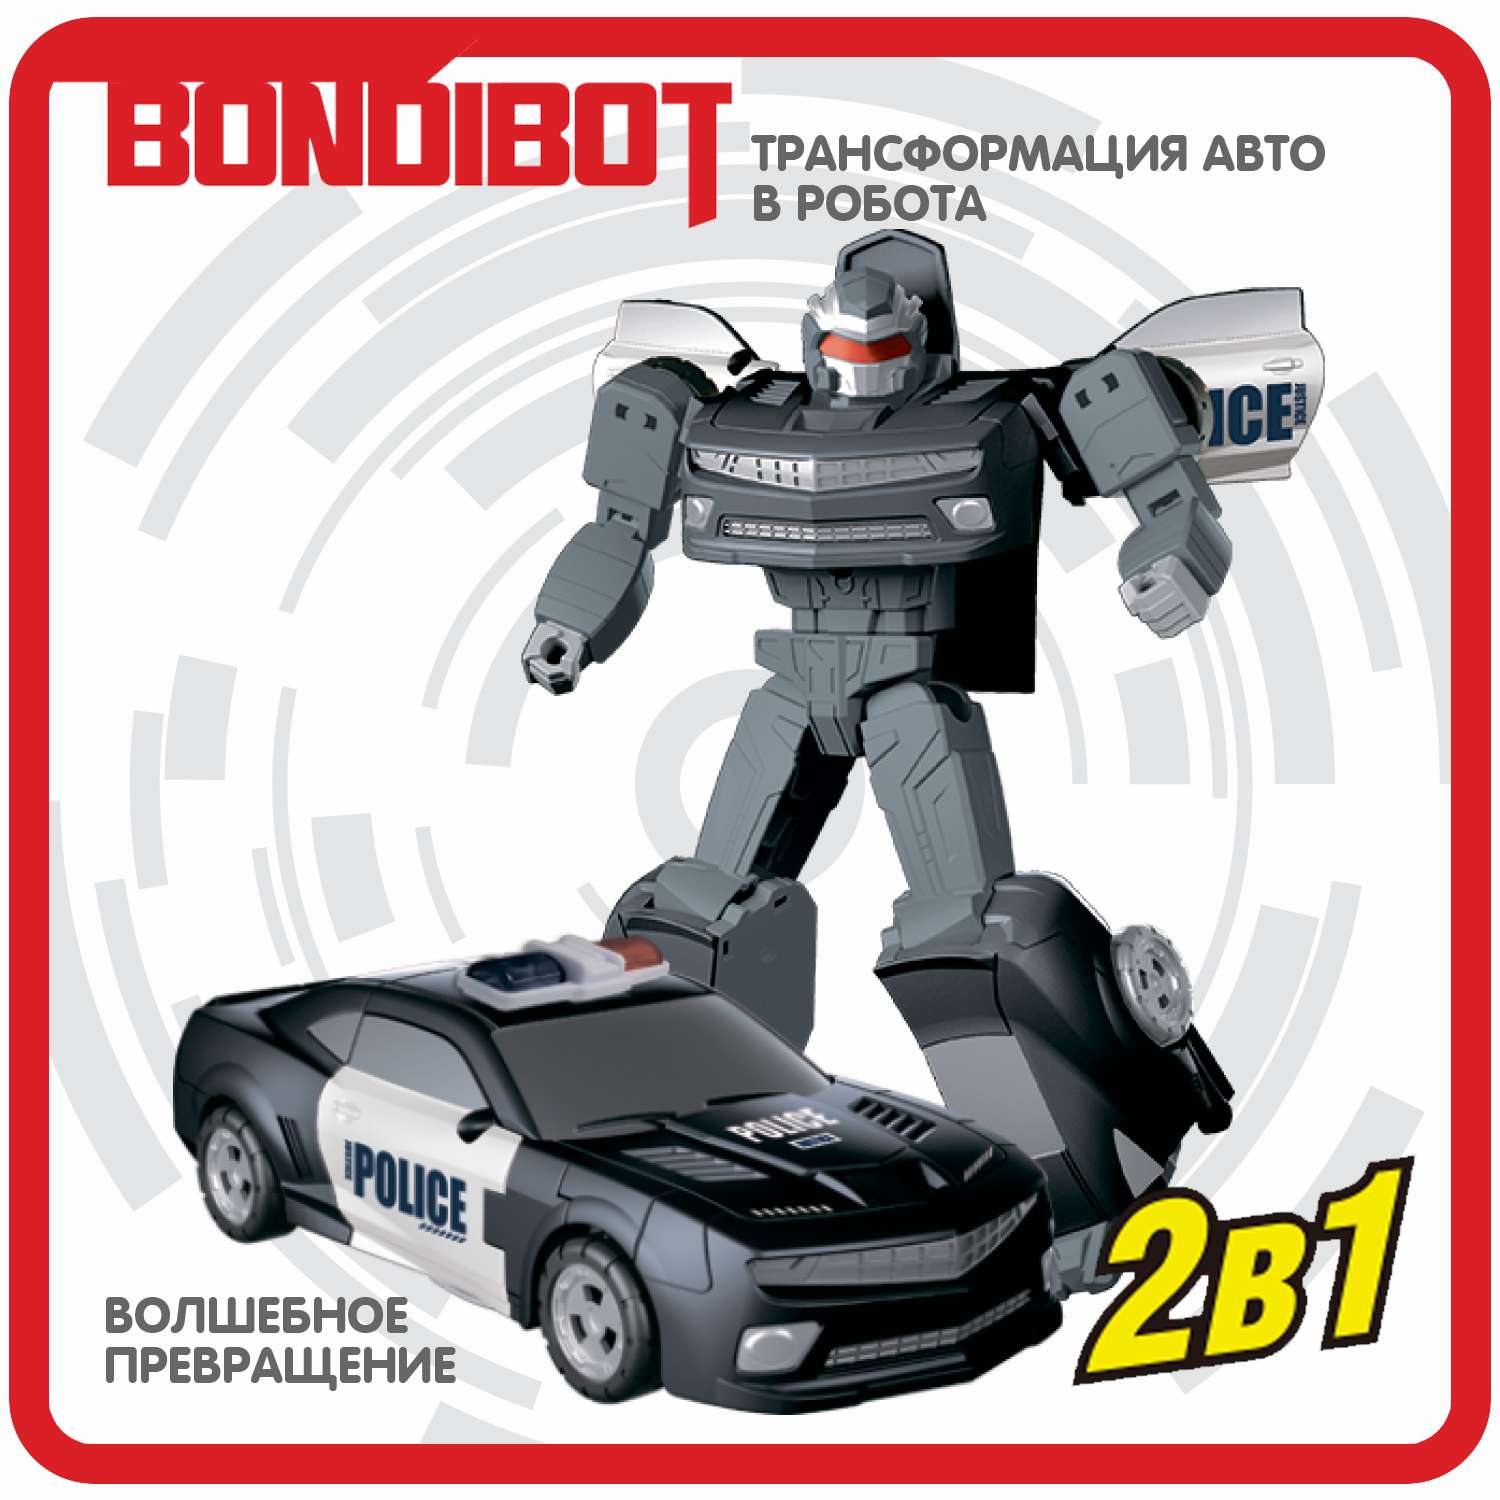 Трансформер BONDIBON Bondibot Робот-автомобиль 2 в 1 полиция черного цвета - фото 4